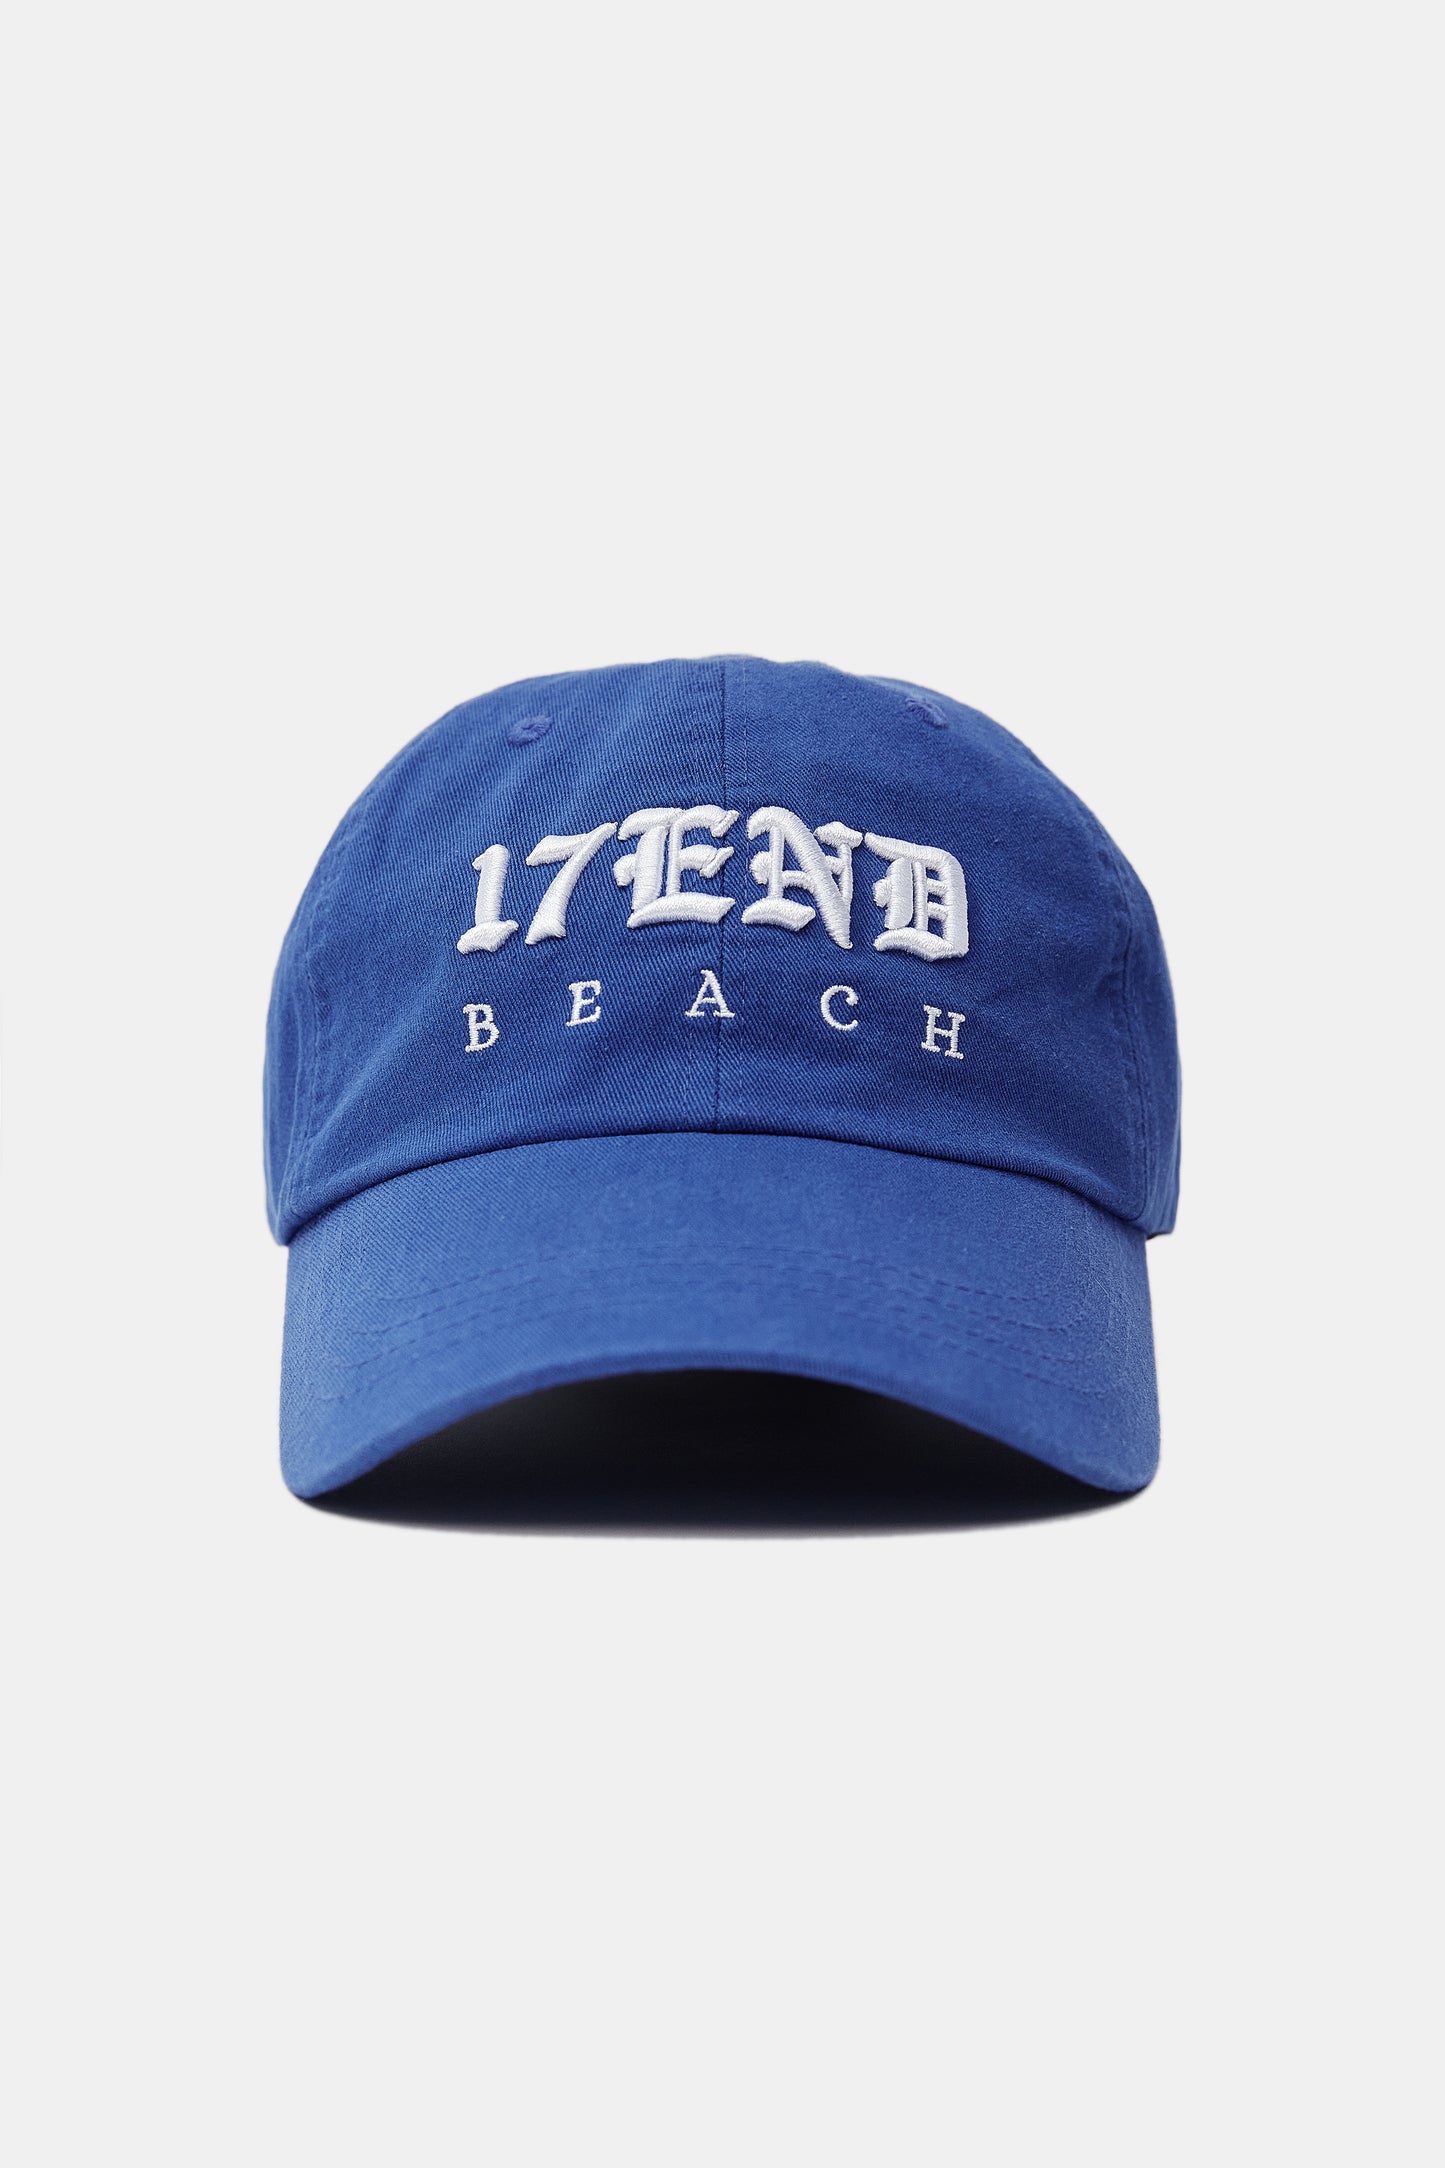 '17 End Beach' Ballcap, Azure Blue